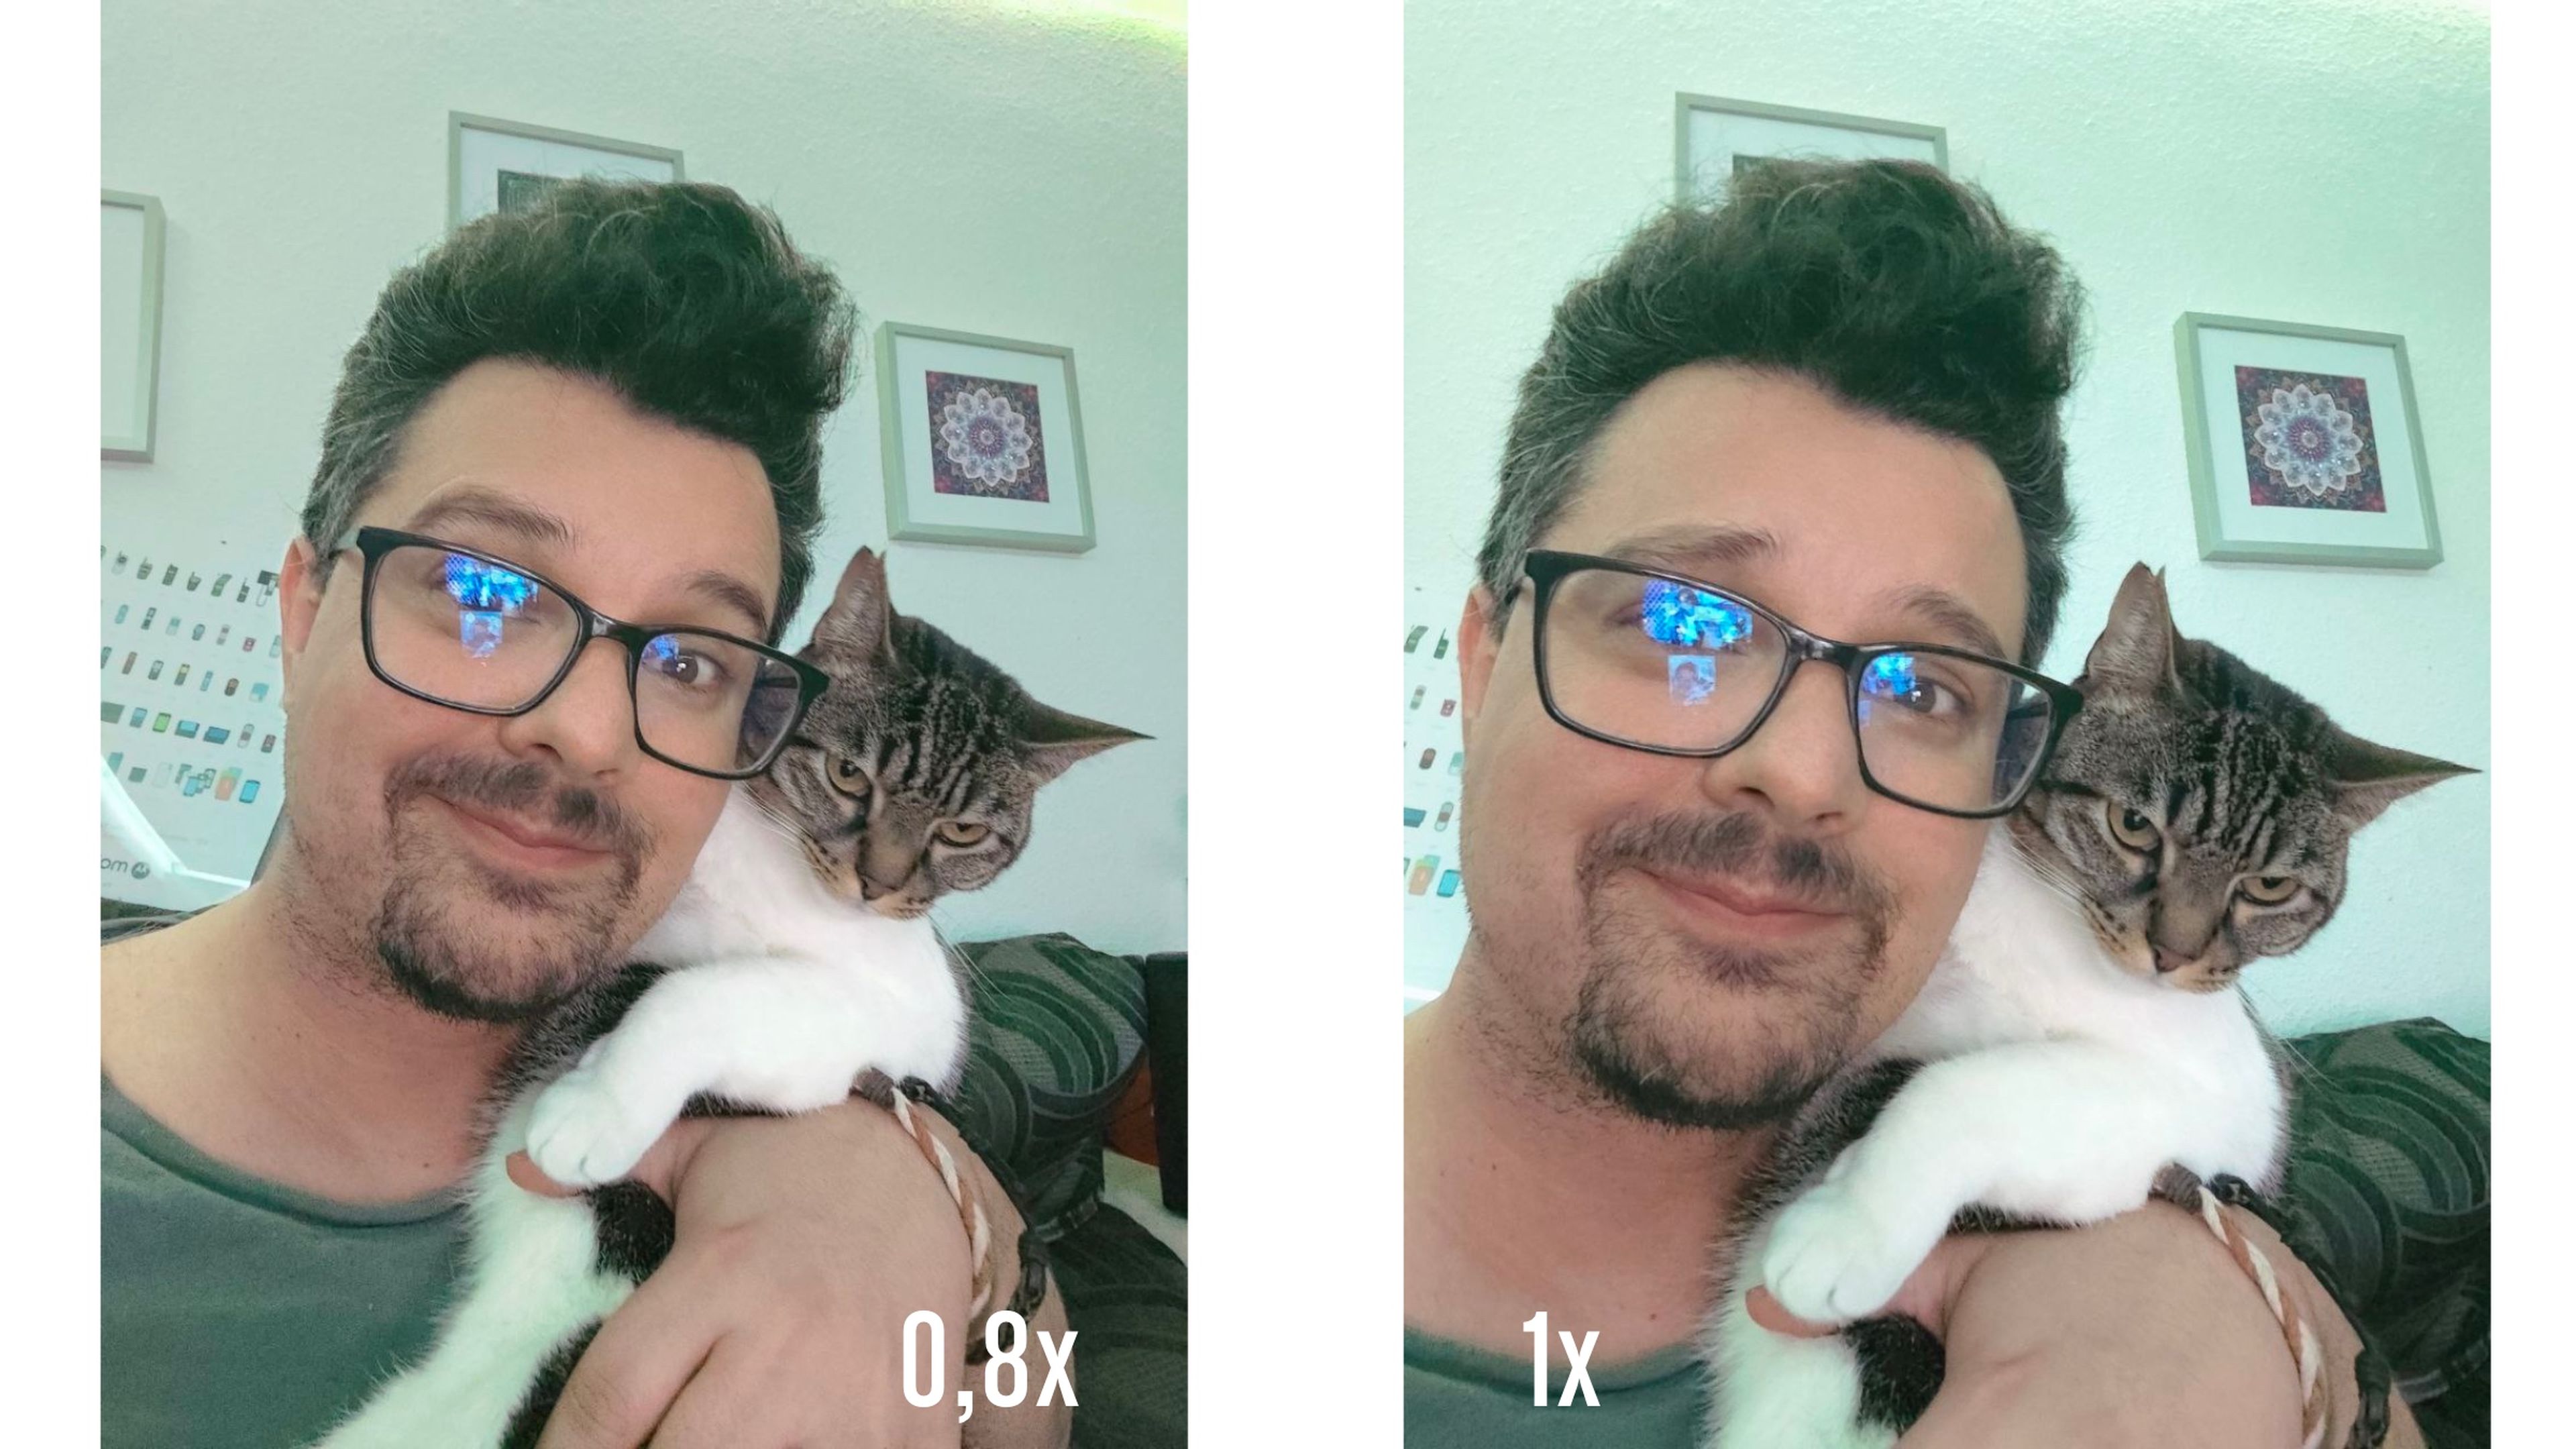 Diferencia focal entre Selfie 0,8 y 1x